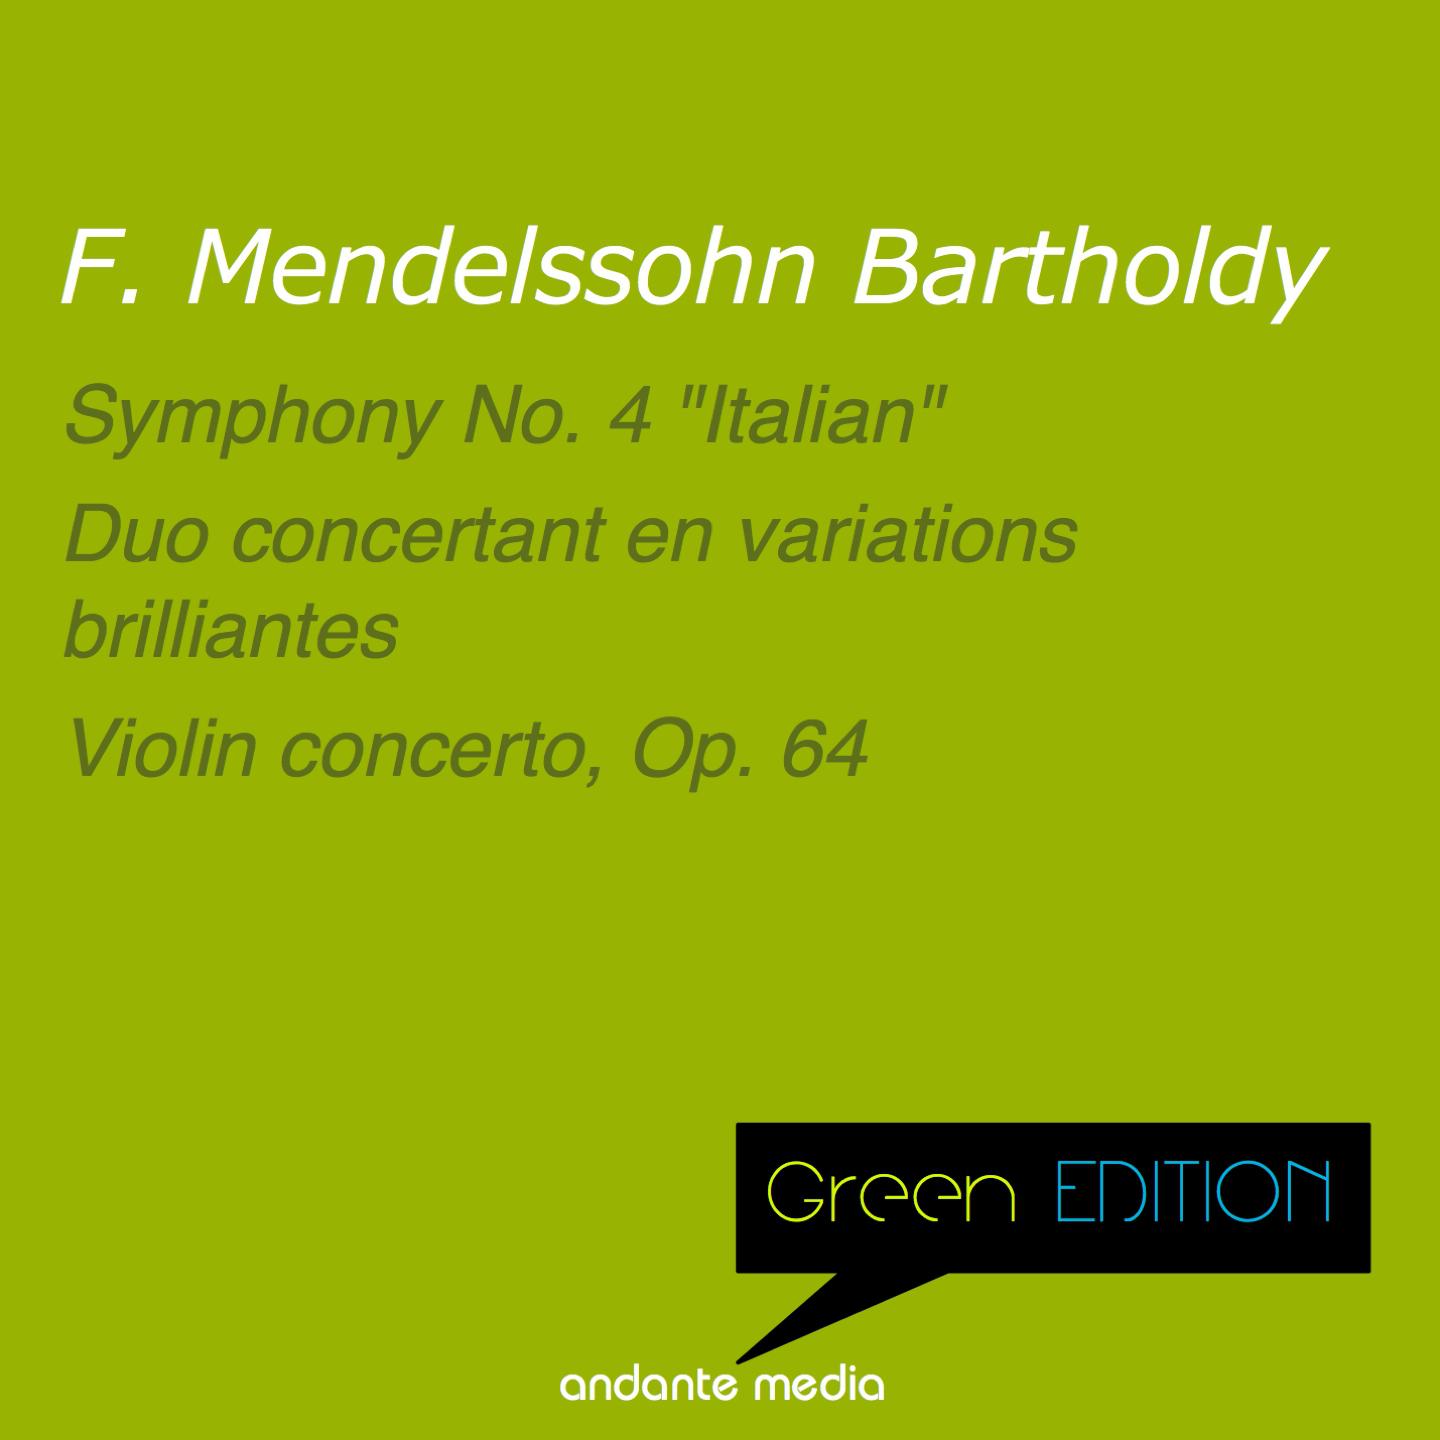 Duo concertant en variations brilliantes in C Minor, MWV O9: Introduction. Andante maestoso